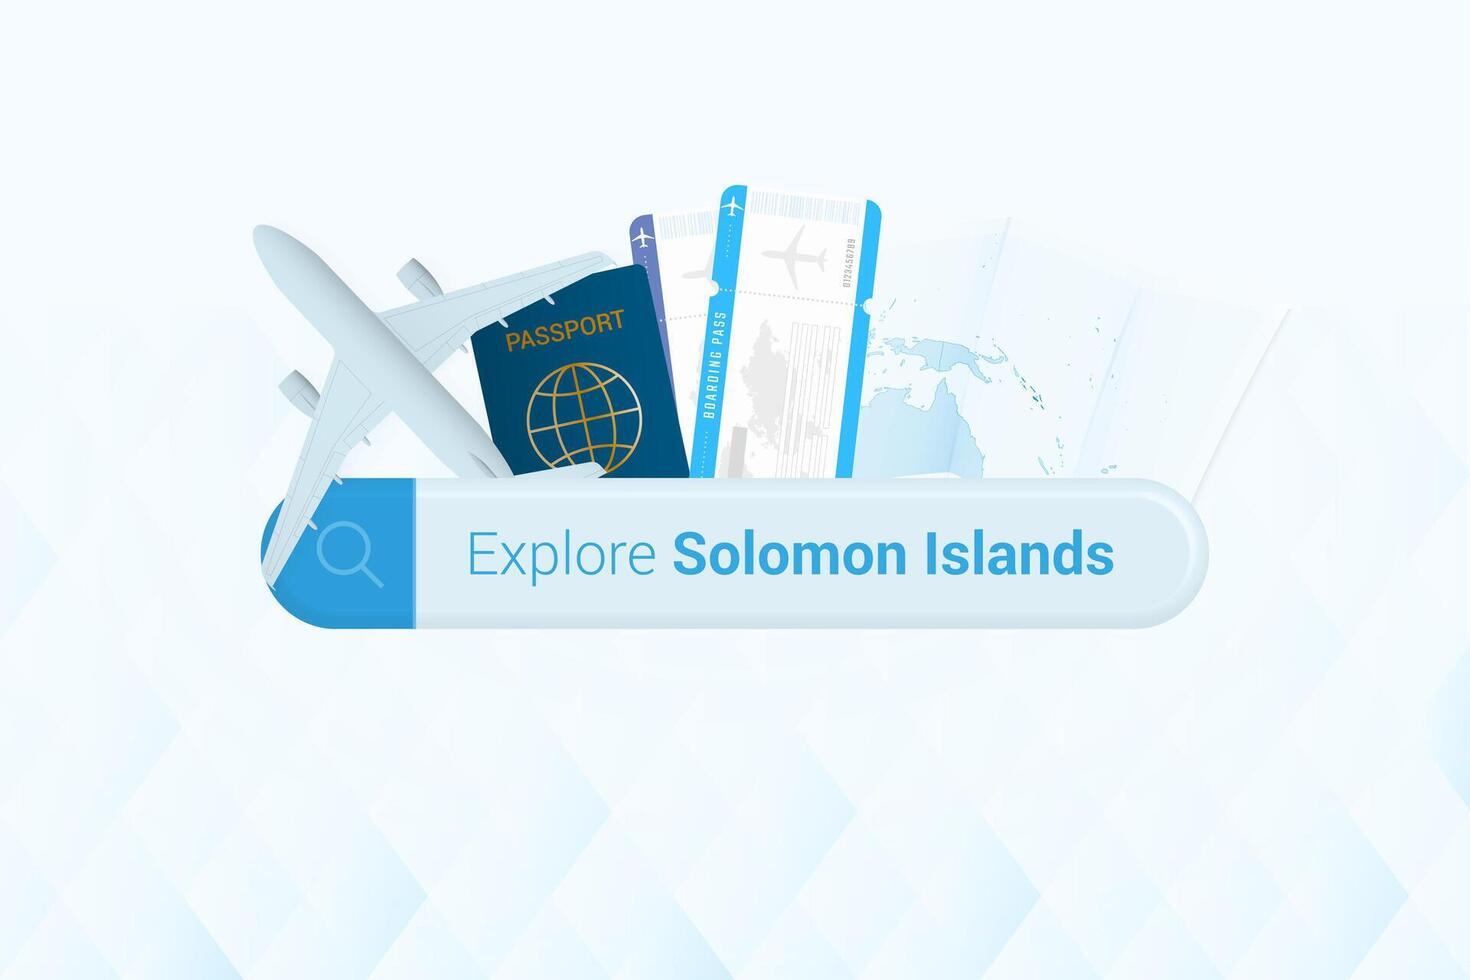 recherche des billets à Salomon îles ou Voyage destination dans Salomon îles. recherche bar avec avion, passeport, embarquement passer, des billets et carte. vecteur